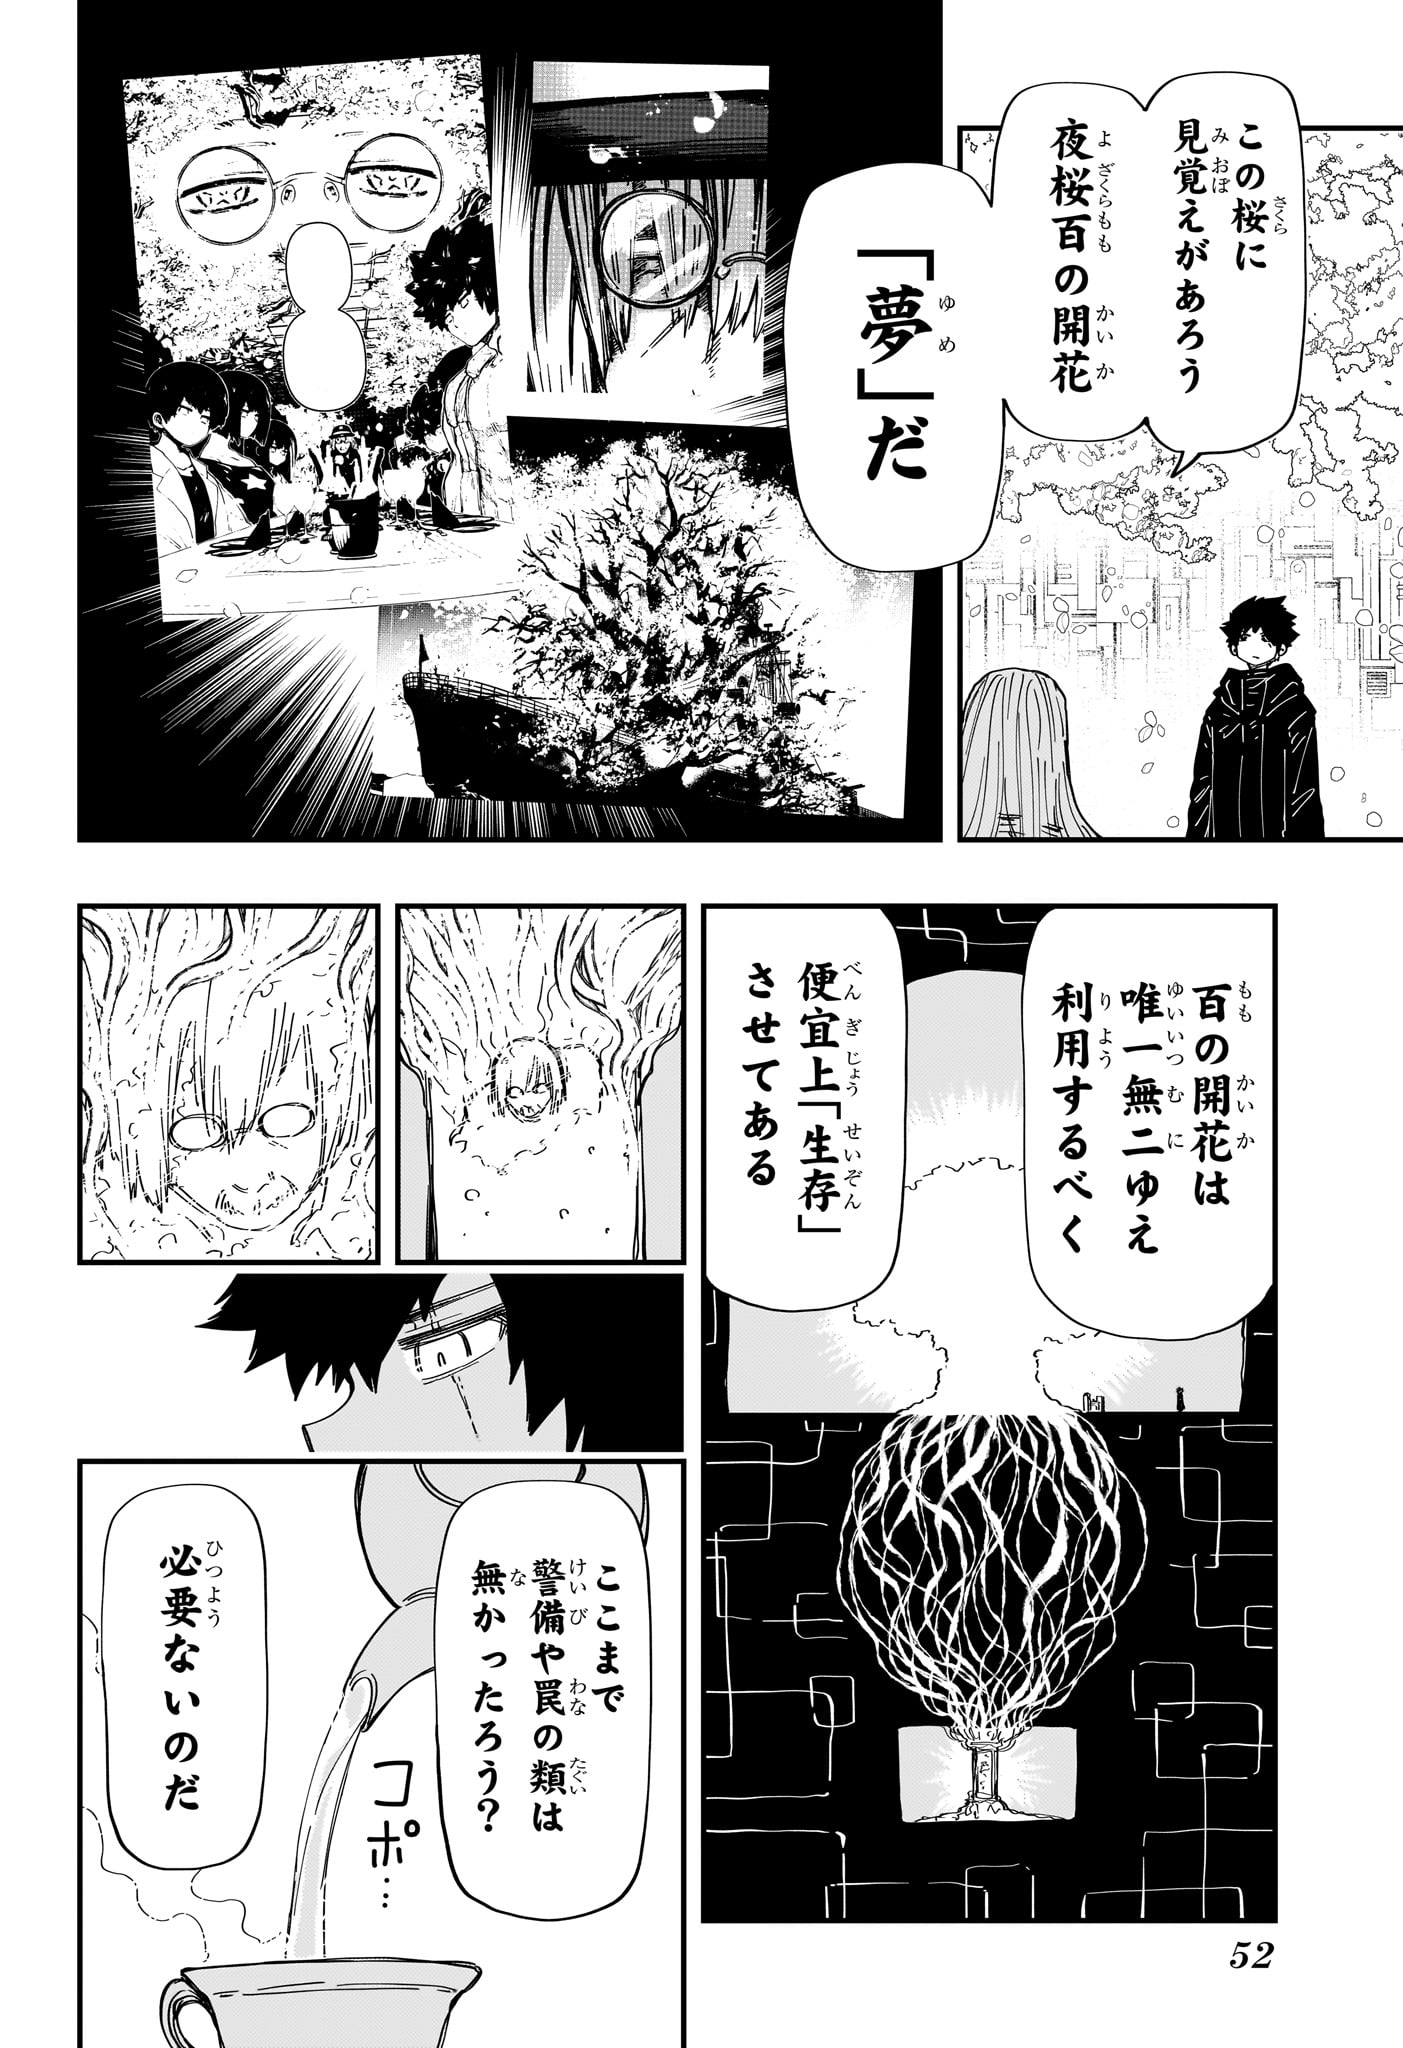 Yozakura-san Chi no Daisakusen - Chapter 229 - Page 14